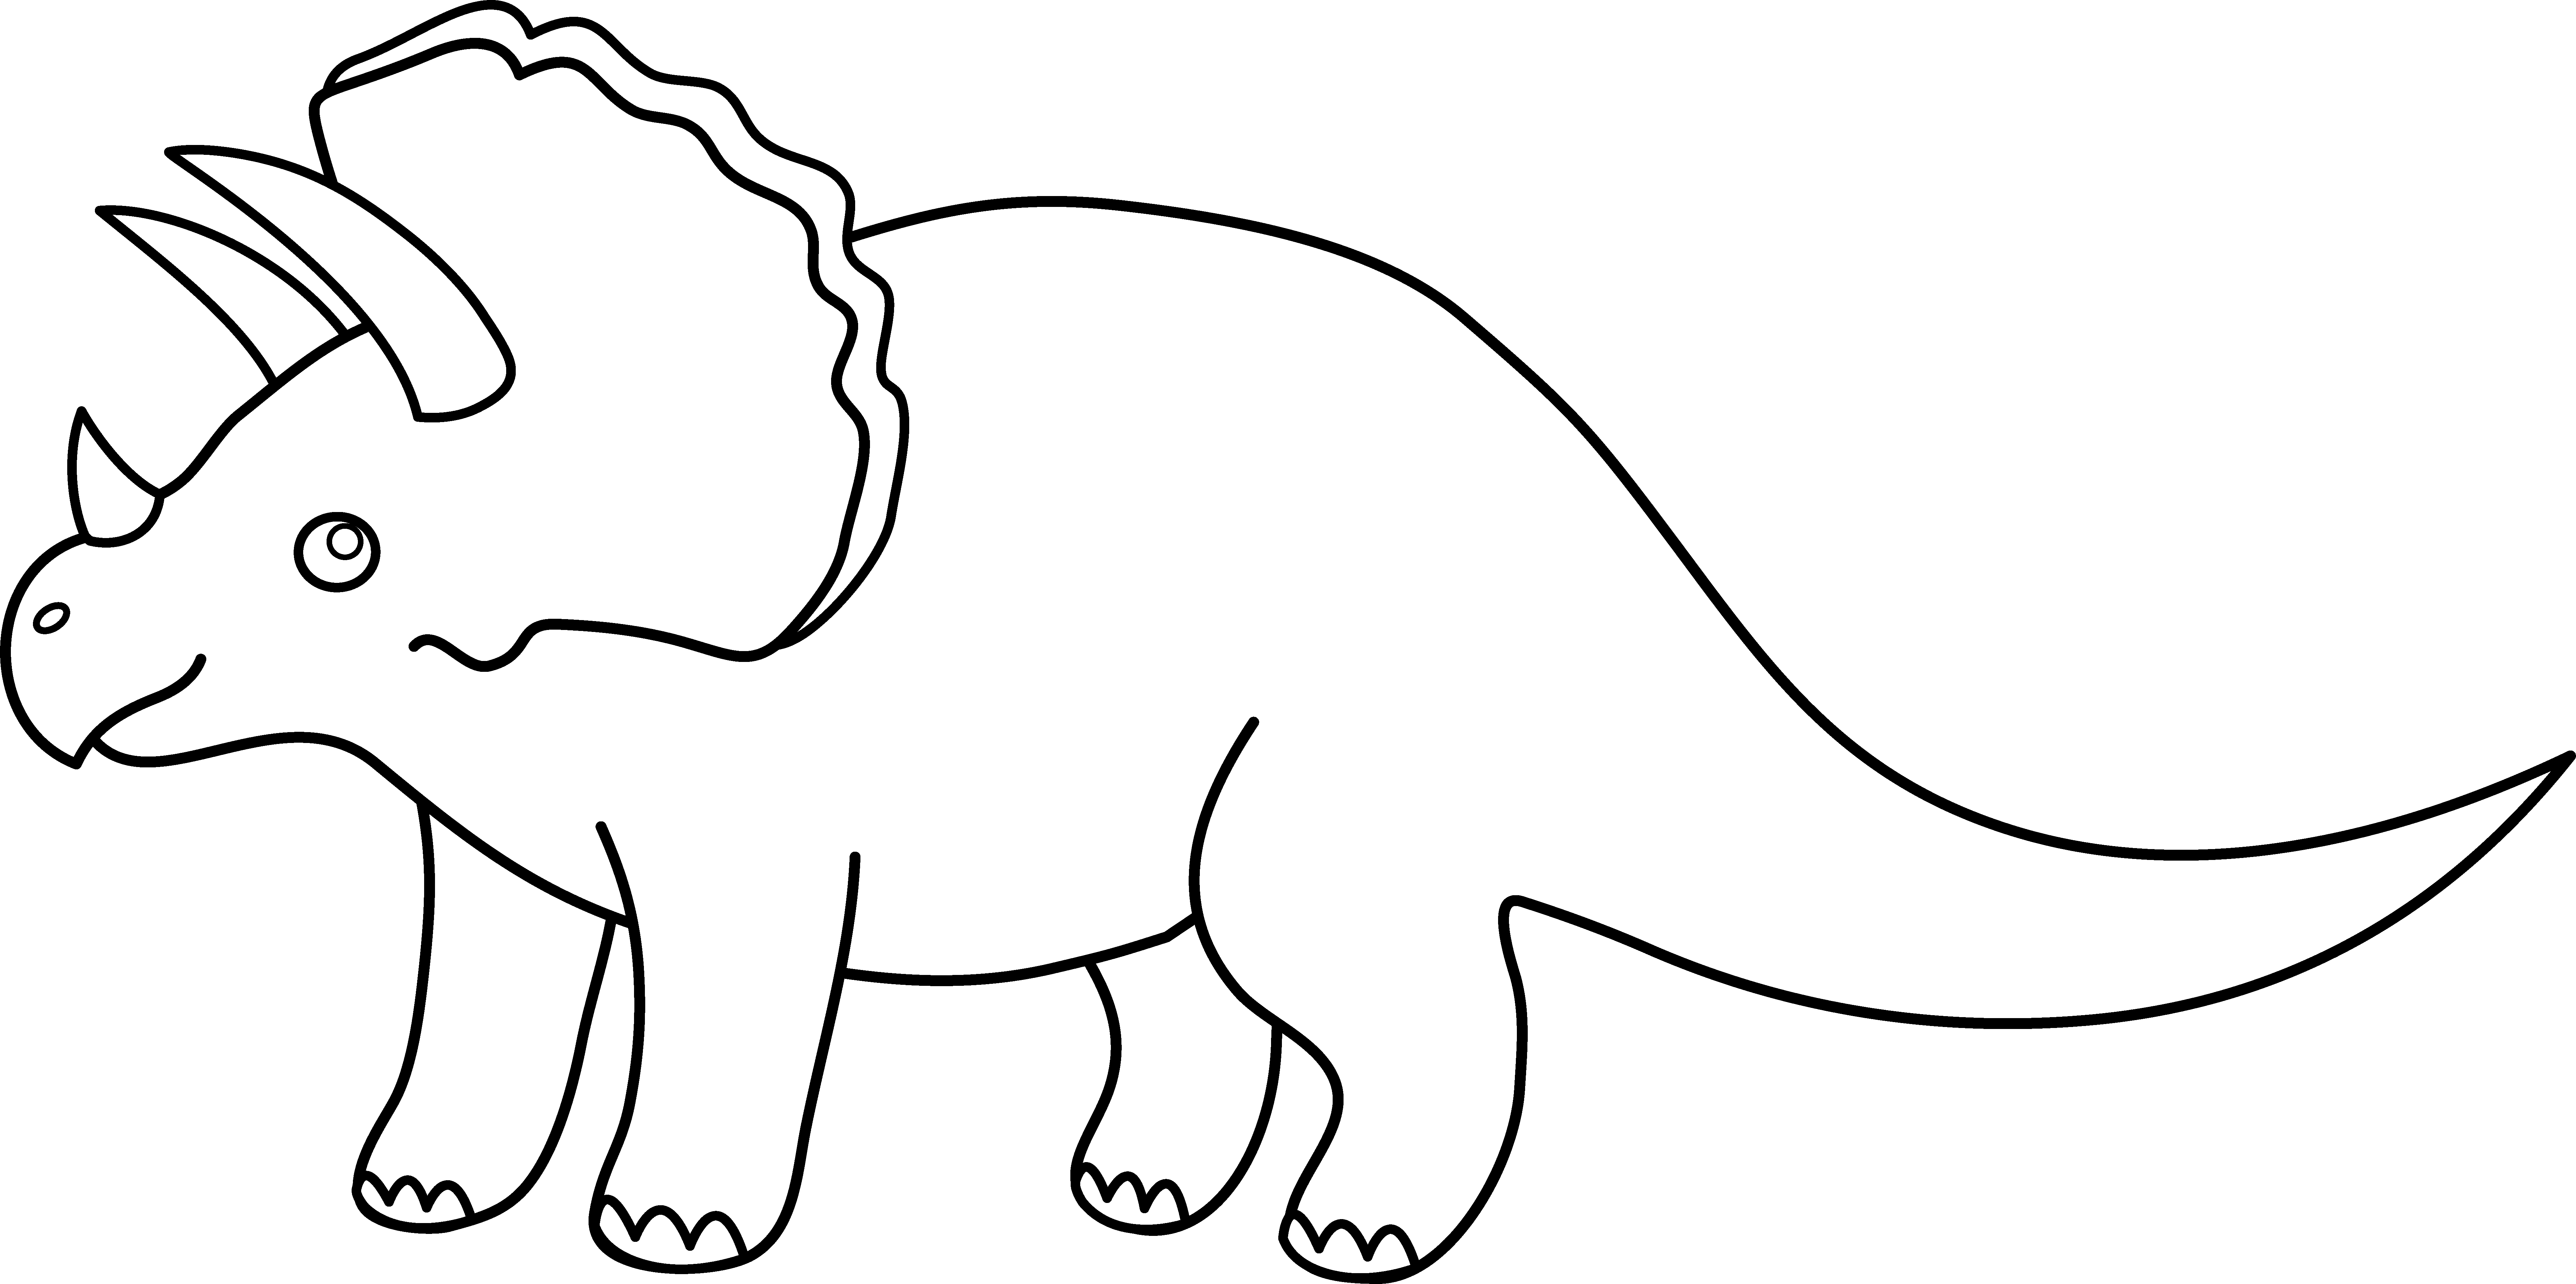 Triceratops Dinosaur Line Art - Free Clip Art